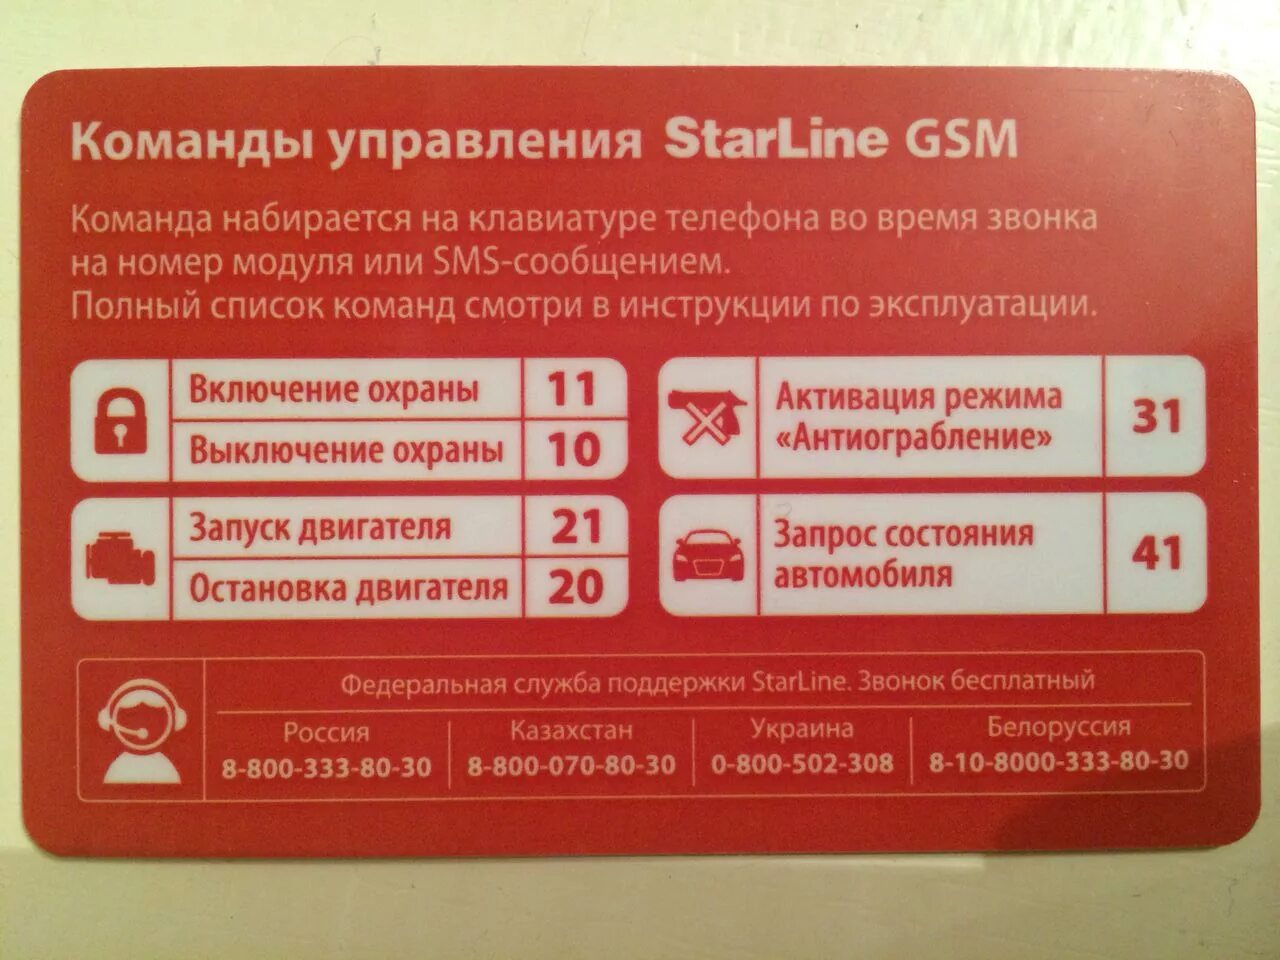 Команда запуск двигателя старлайн. Старлайн а93 GSM модуль. Коды команд старлайн GSM а93. SMS команды STARLINE a93. Komandi upravleniya STARLINE GSM а93.